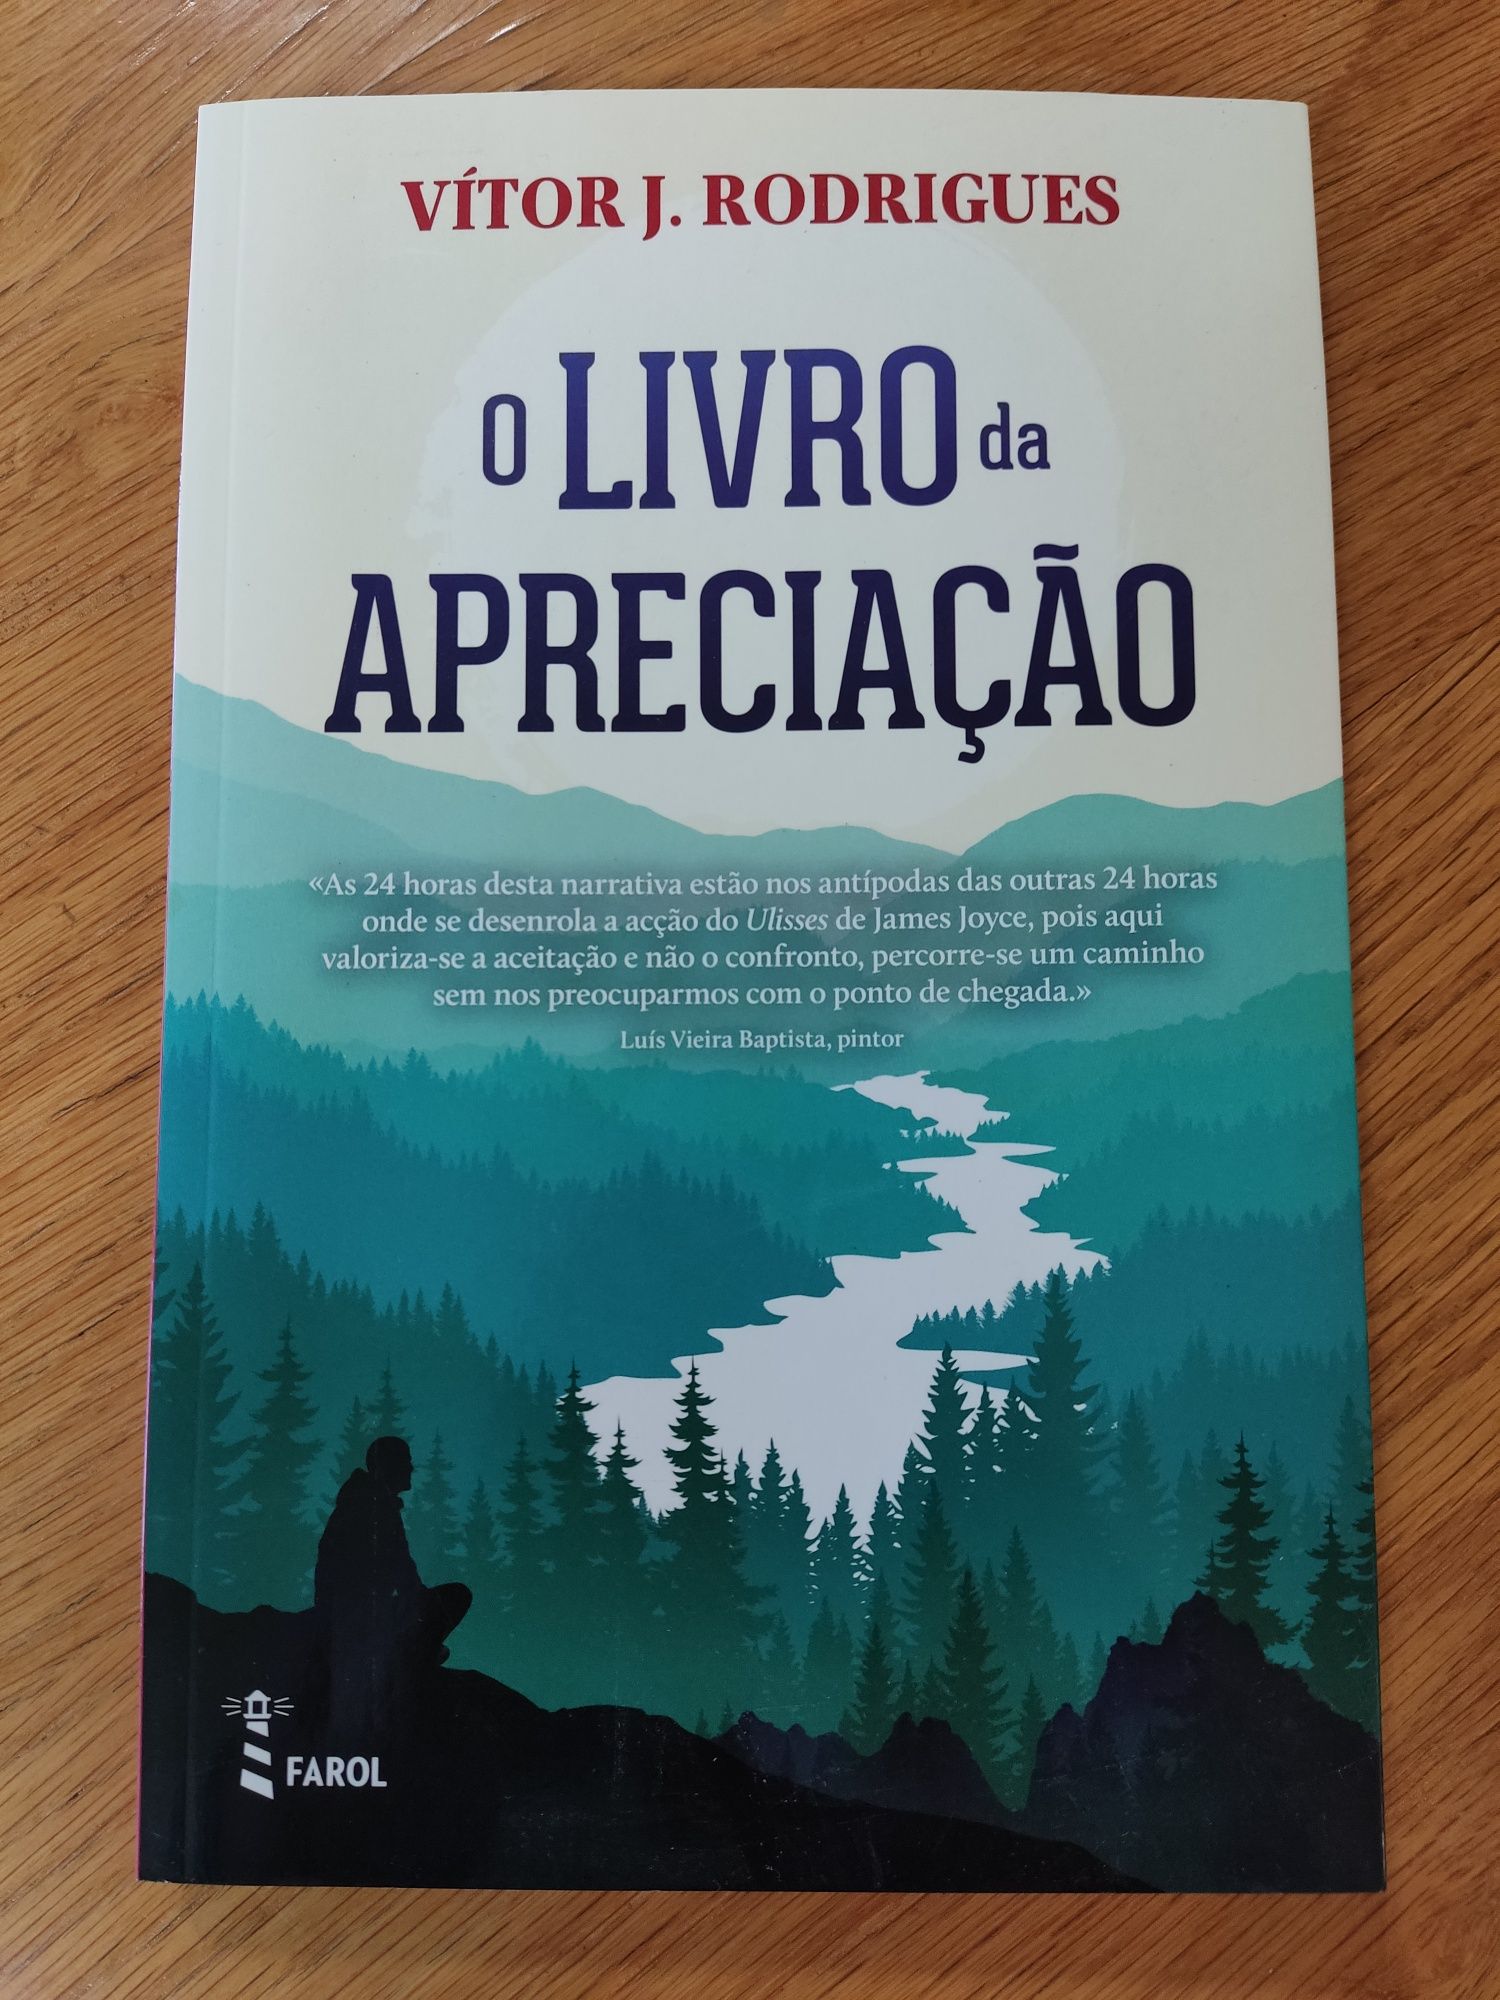 Livro "O Livro da Apreciação" de Vítor J. Rodrigues - Novo